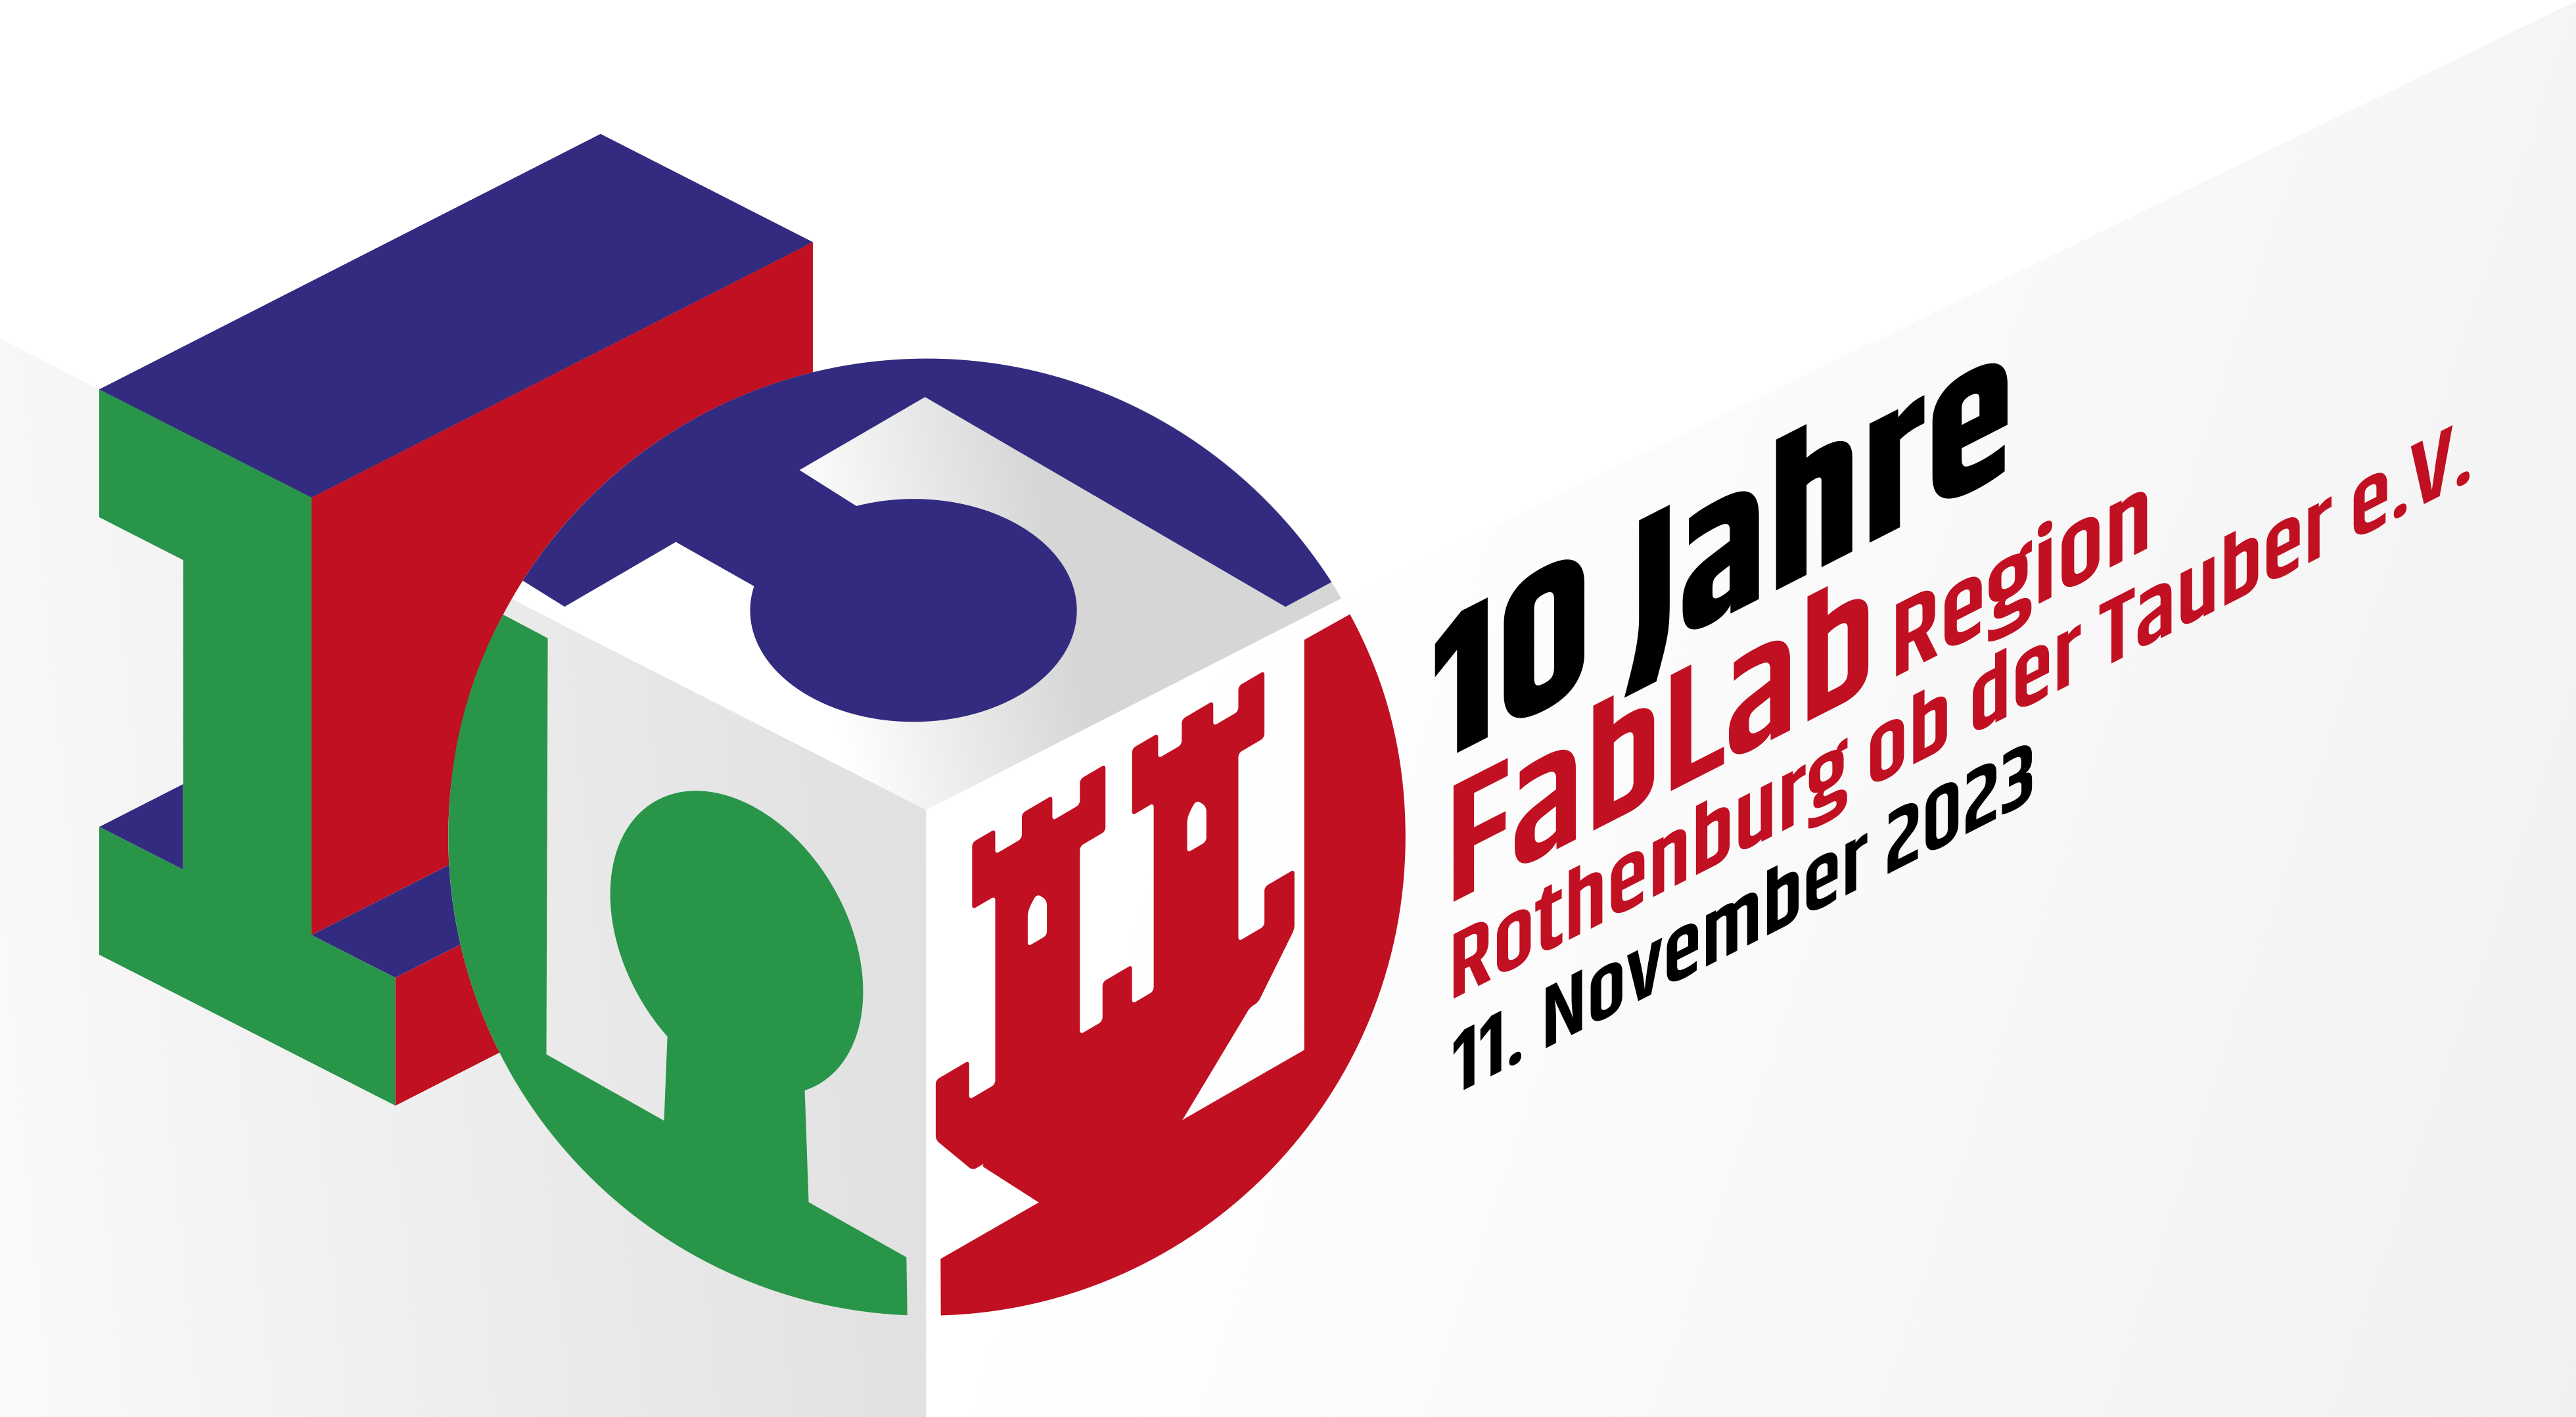 10 Jahre FabLab Region Rothenburg! | FabLab Rothenburg